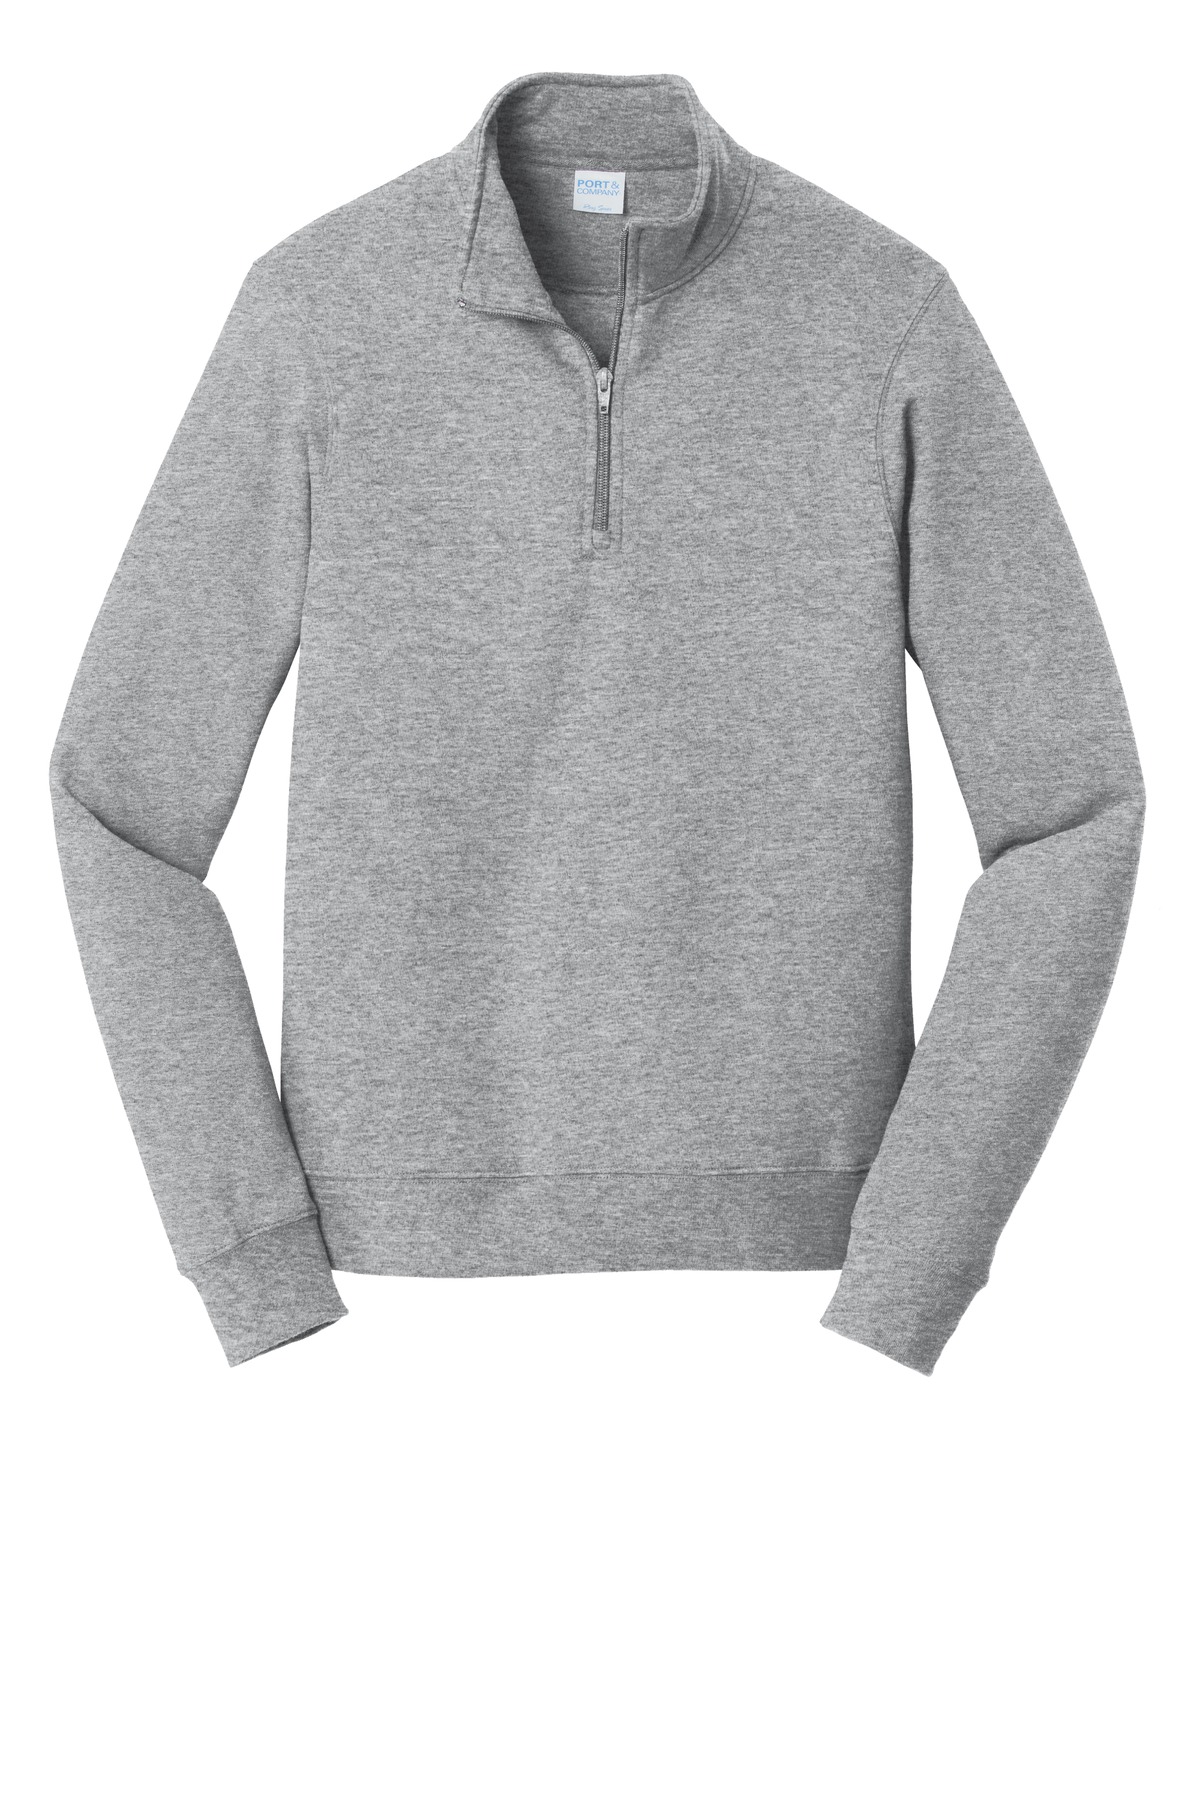 Port & Company® Fan Favorite Fleece 1/4-Zip Pullover Sweatshirt. PC850Q ...